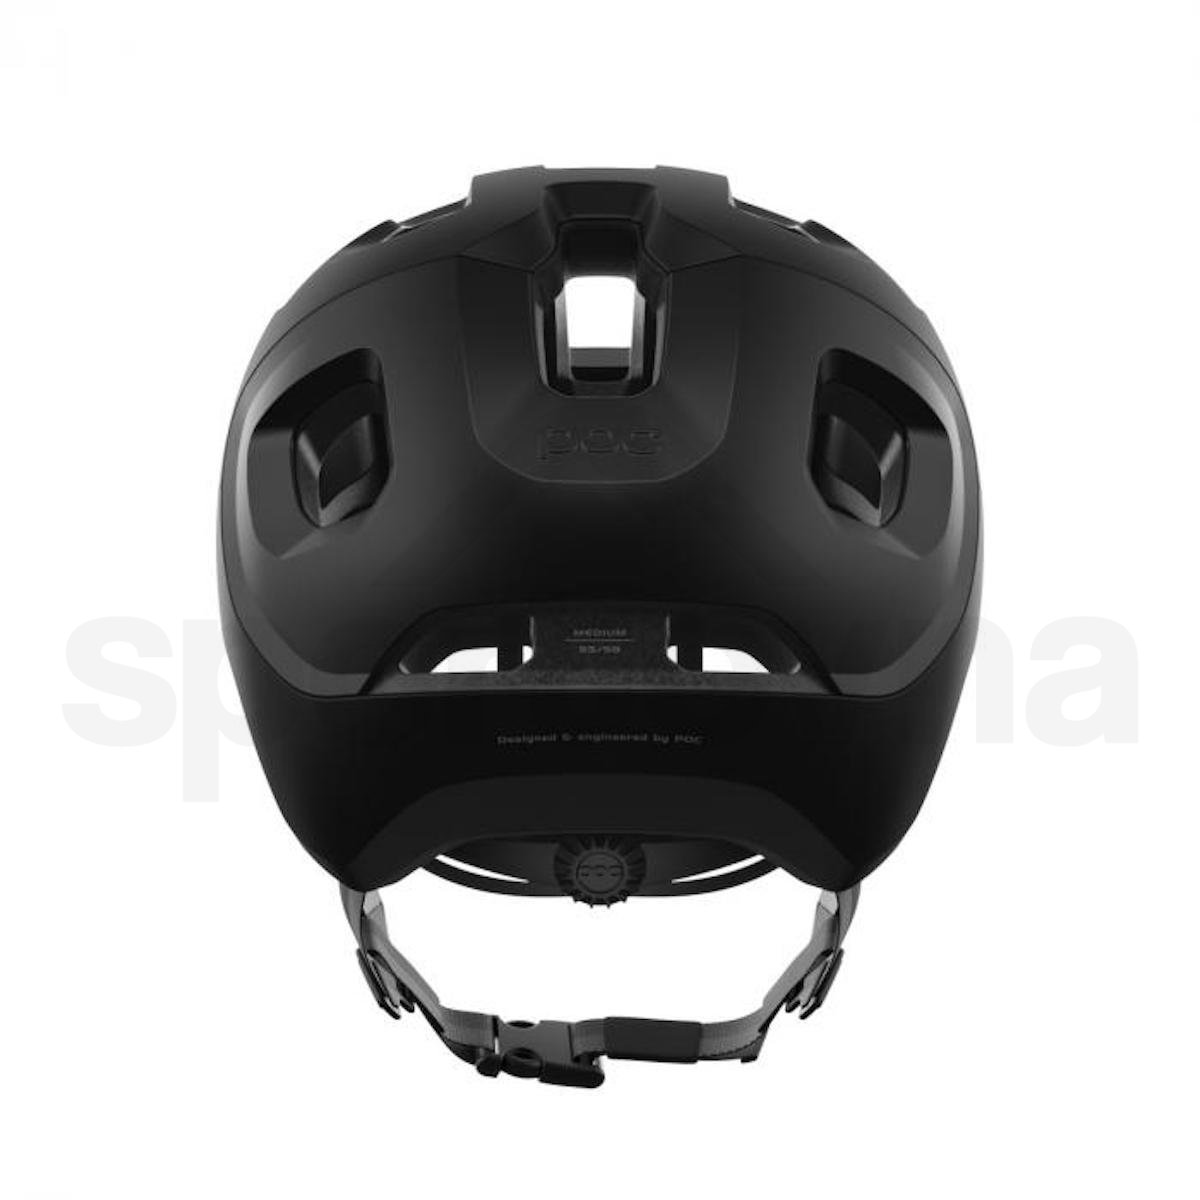 Cyklo helma POC Axion - černá